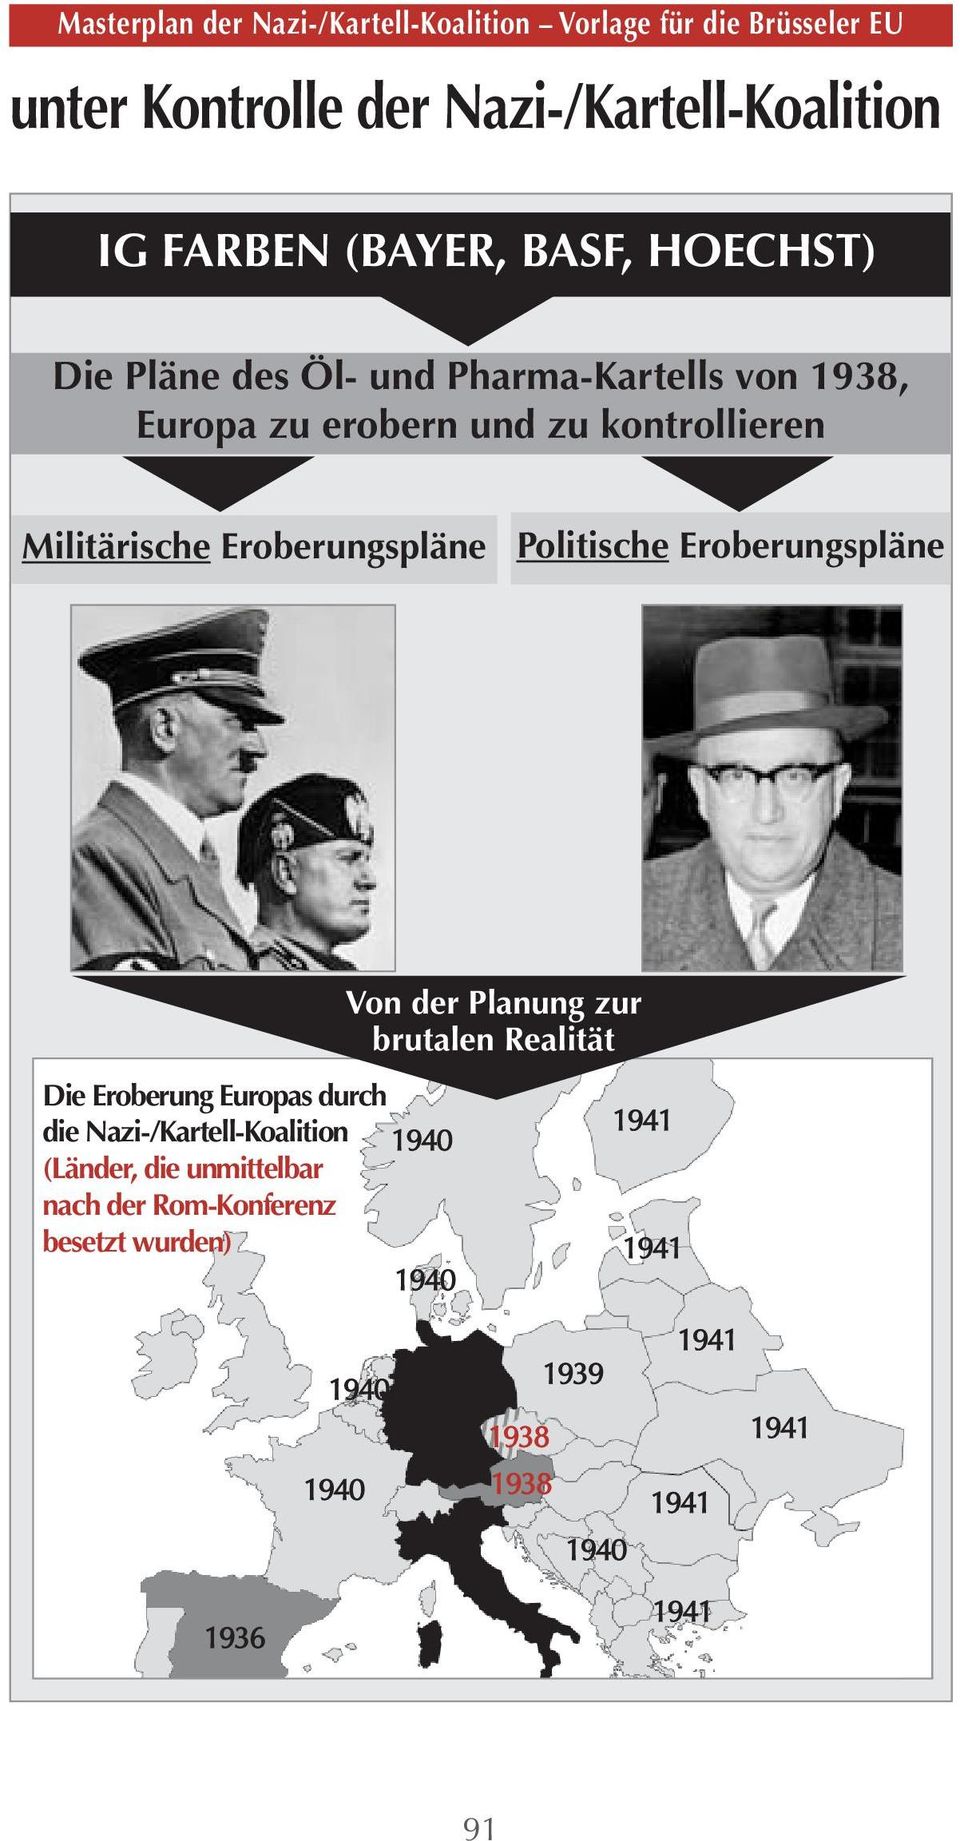 Politische Eroberungspläne Die Eroberung Europas durch die Nazi-/Kartell-Koalition (Länder, die unmittelbar nach der Rom-Konferenz